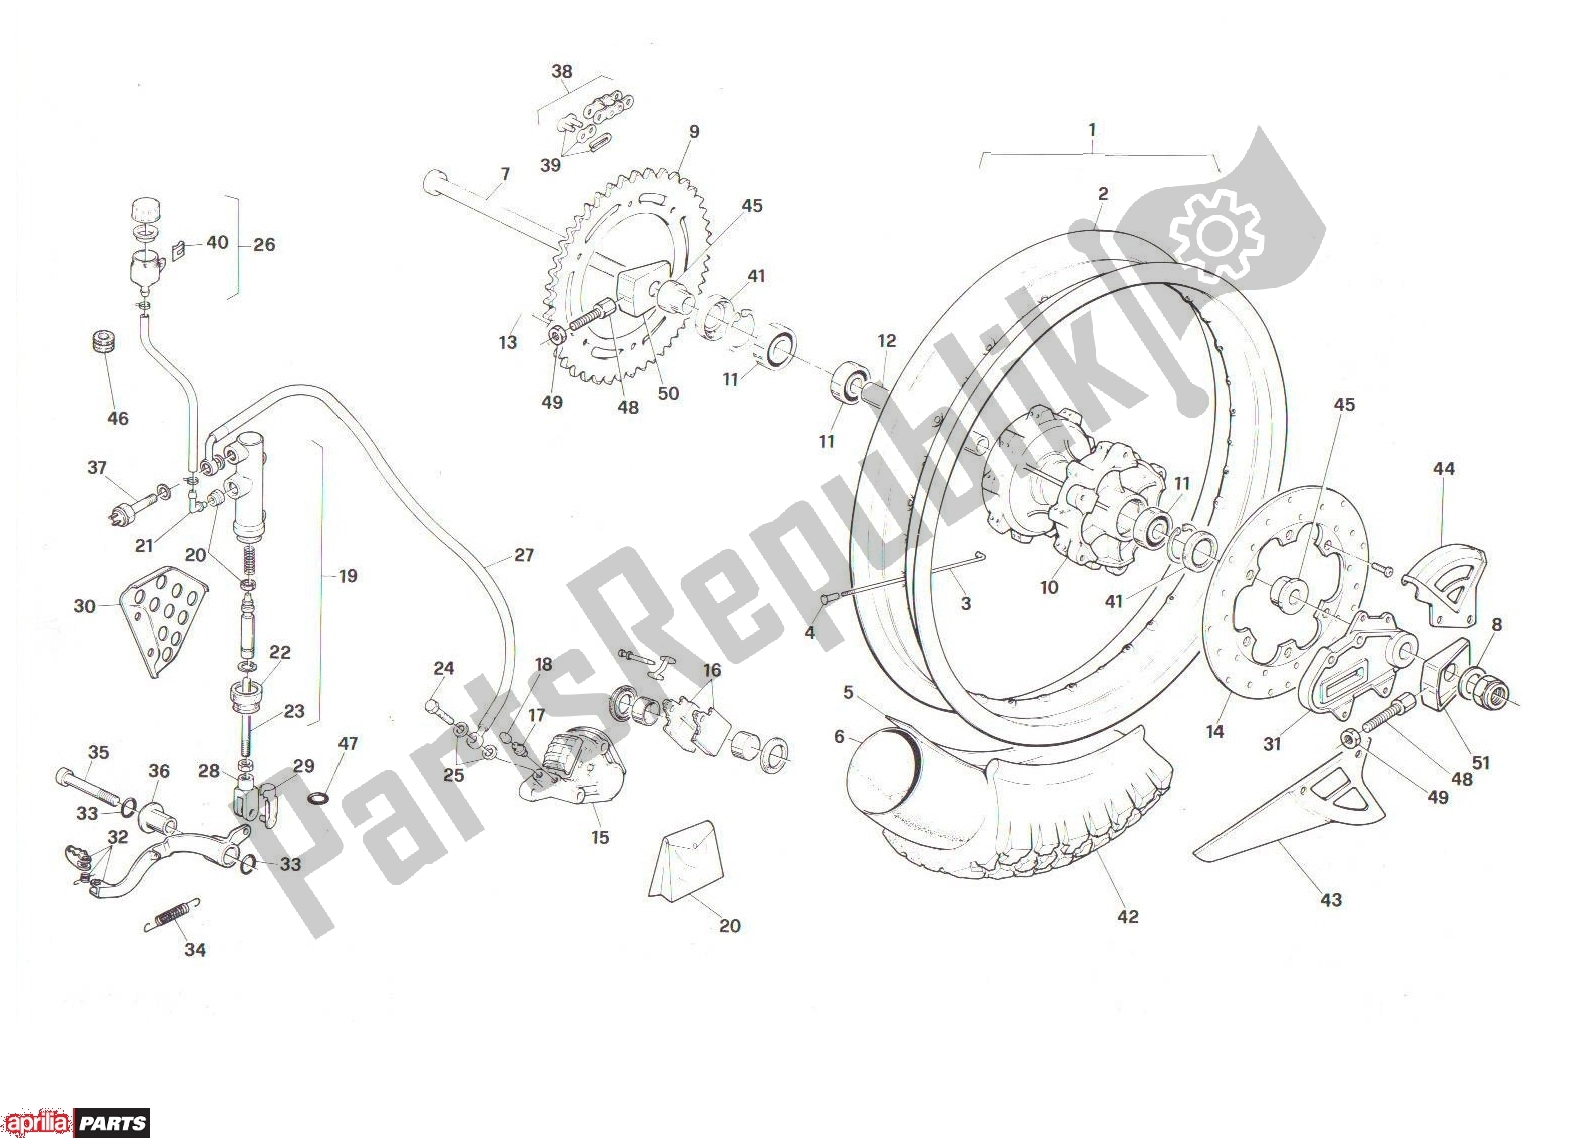 Todas las partes para Rear Wheel de Aprilia RX 104 125 1991